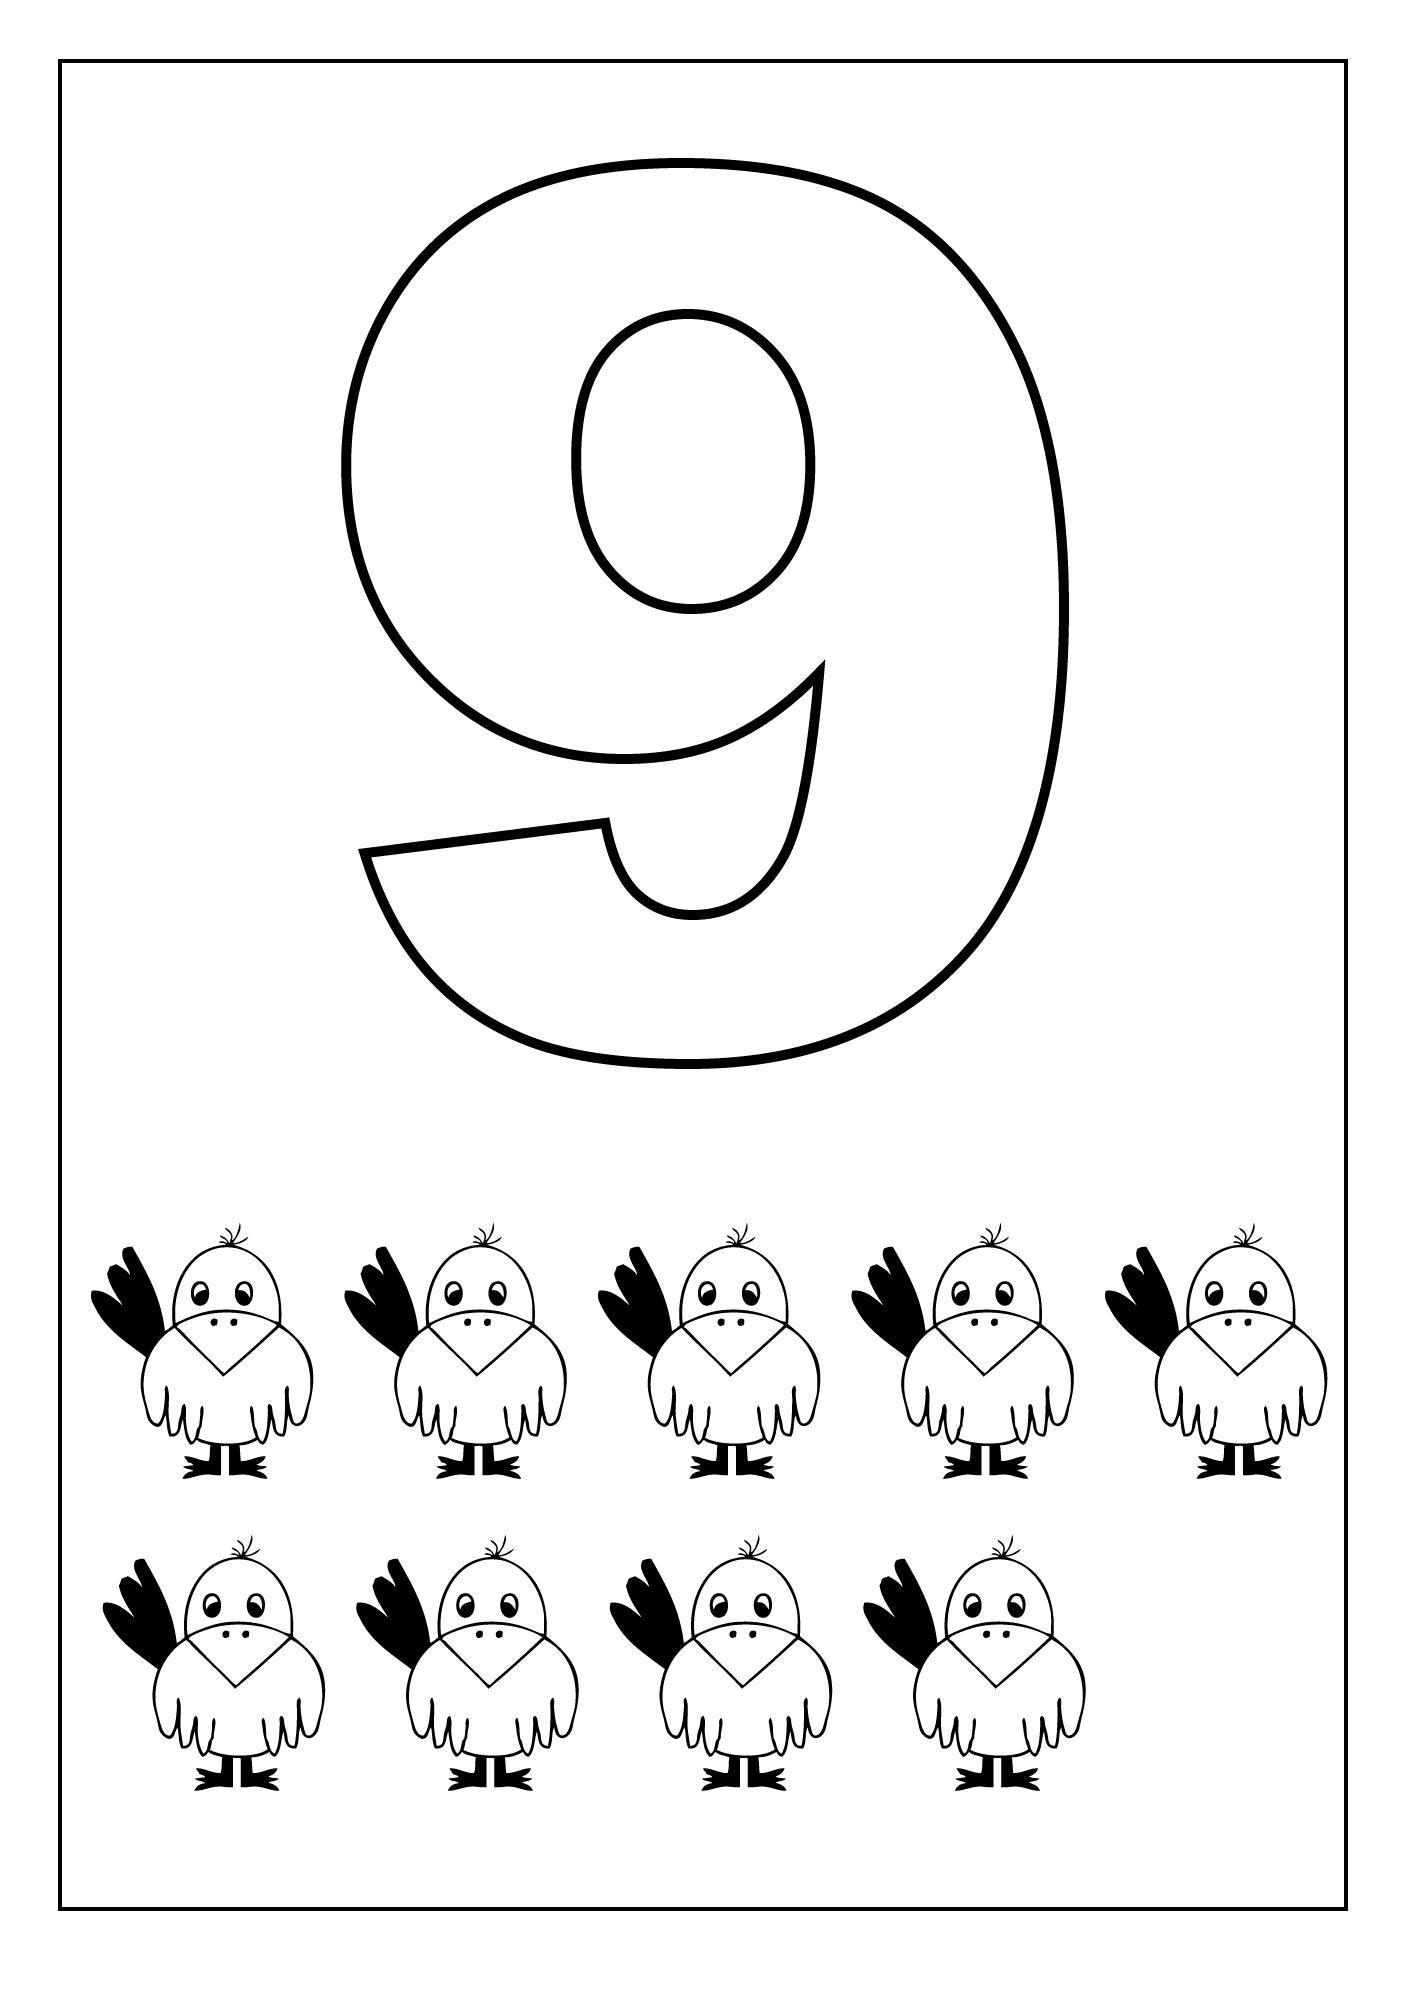 Как нарисовать цифру 9 с 9 углами